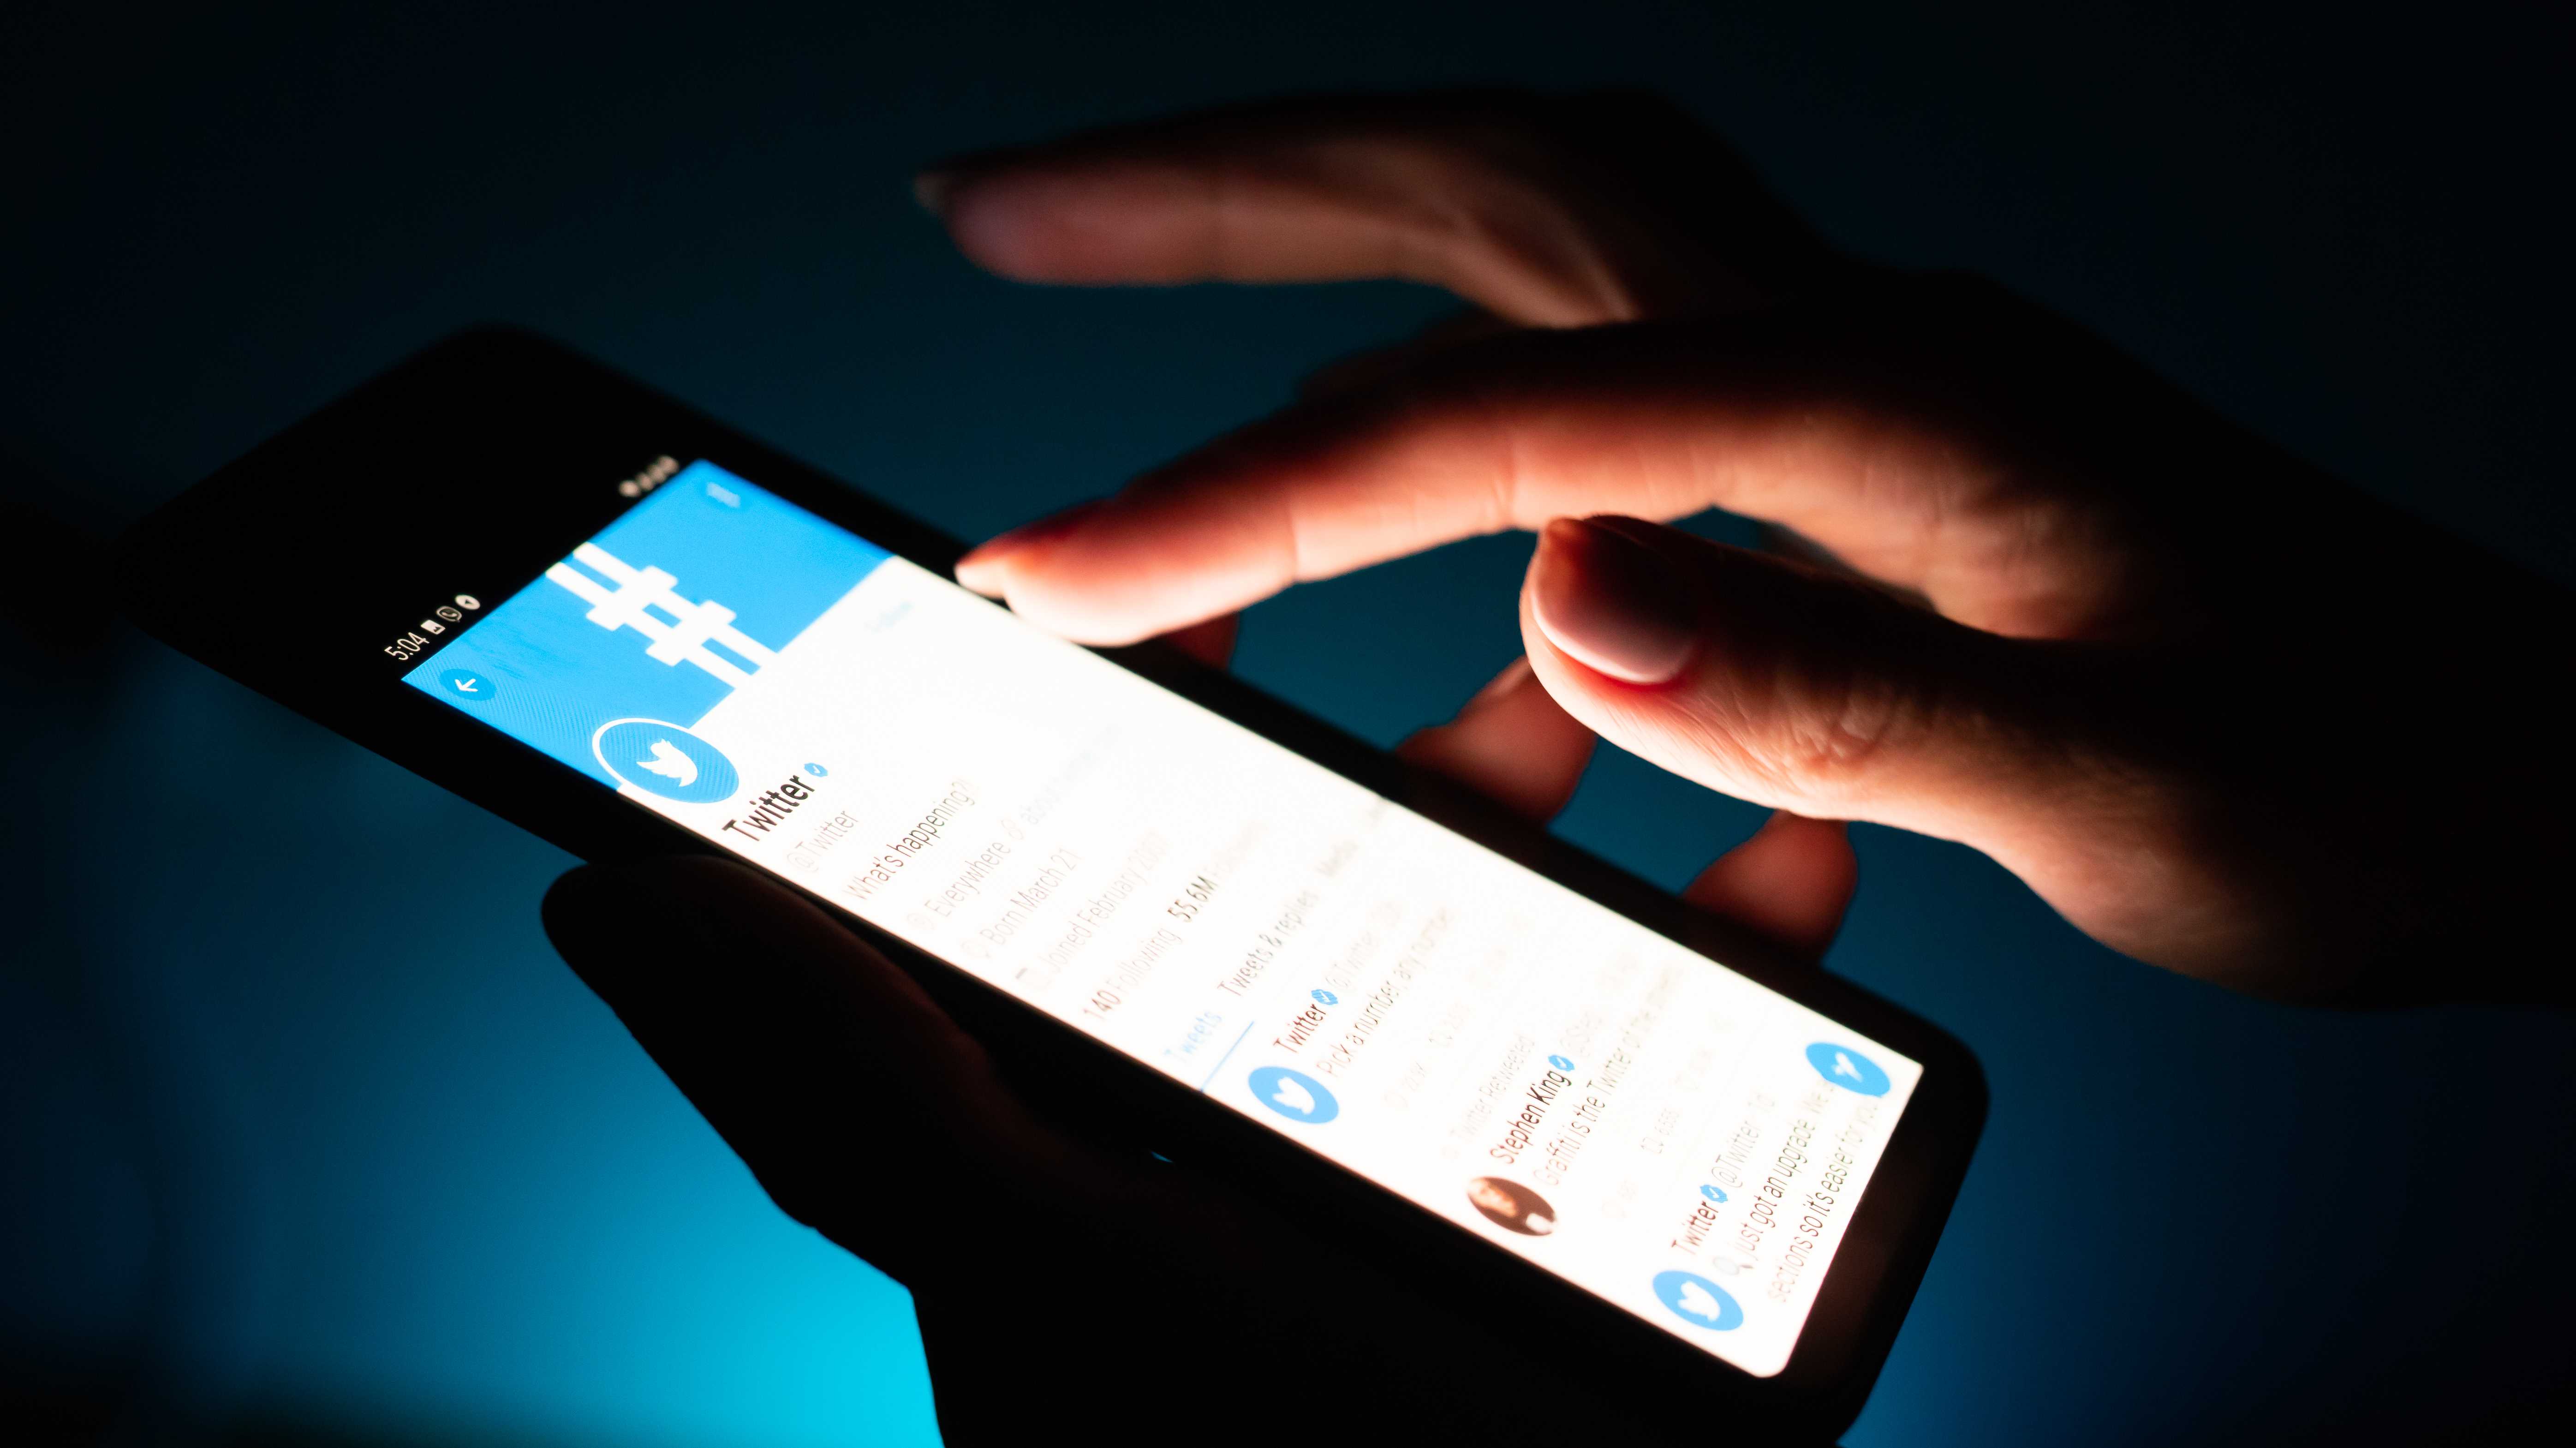 Eine Hand tippt auf ein Smartphone, auf dem die Twitter-App geöffnet ist.